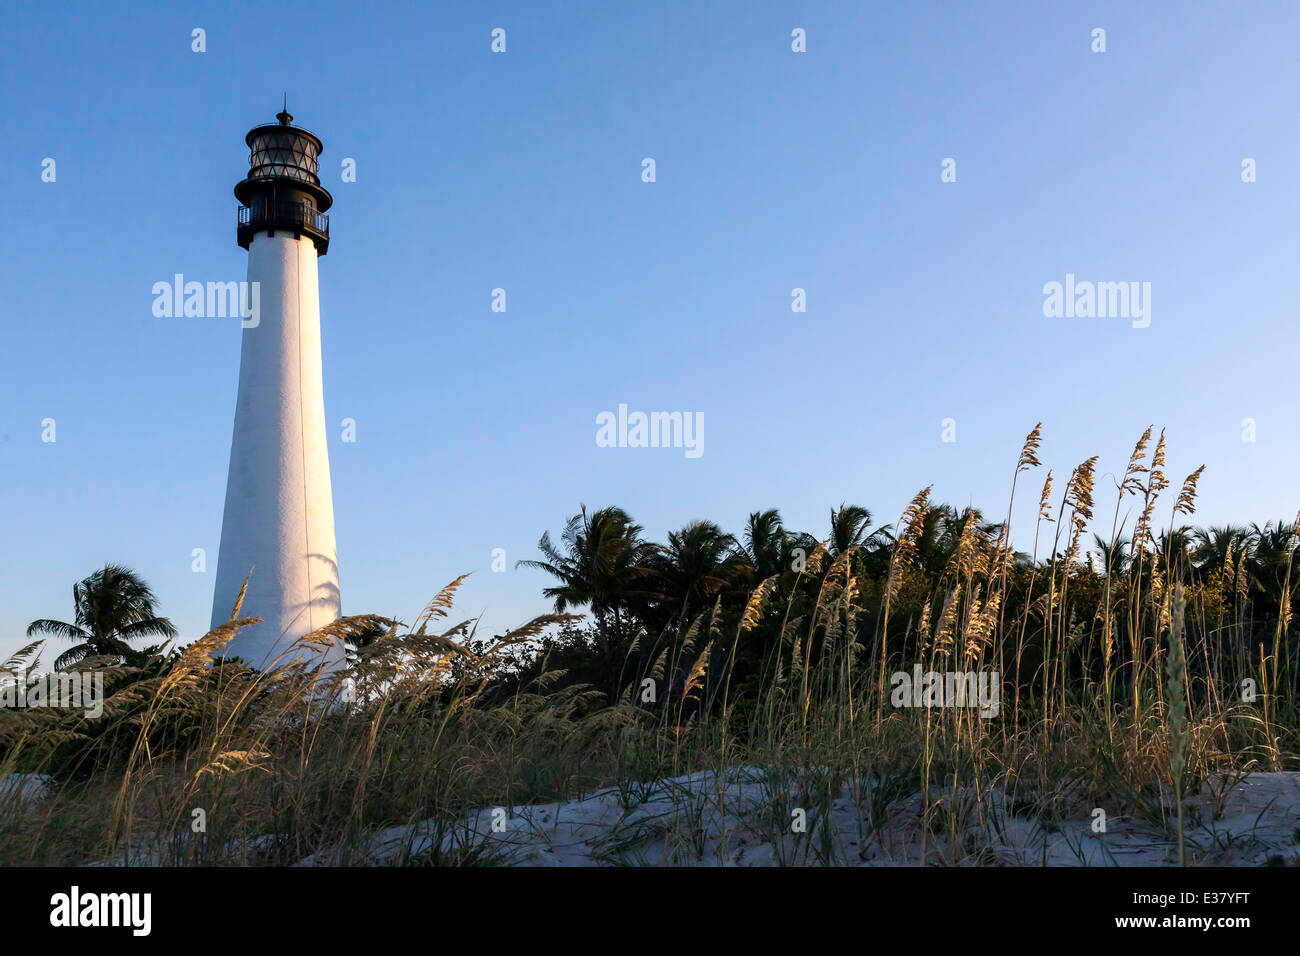 Le phare de Cape Florida historique situé dans le Bill Baggs Cape Florida State Park sur Key Biscayne, Miami, Floride, USA. Banque D'Images